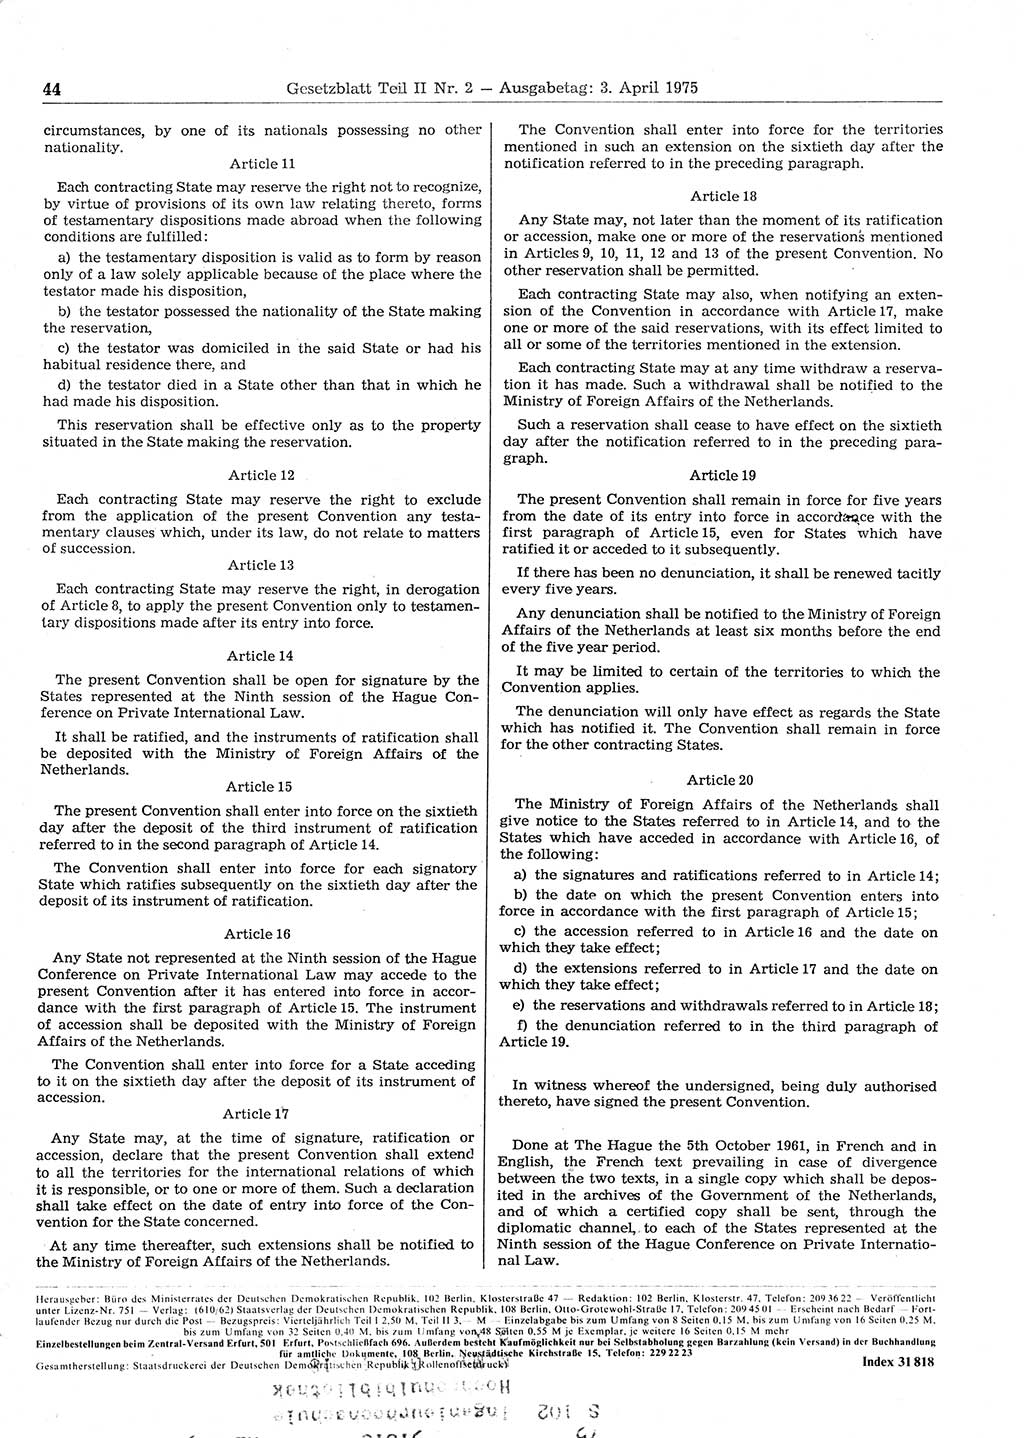 Gesetzblatt (GBl.) der Deutschen Demokratischen Republik (DDR) Teil ⅠⅠ 1975, Seite 44 (GBl. DDR ⅠⅠ 1975, S. 44)